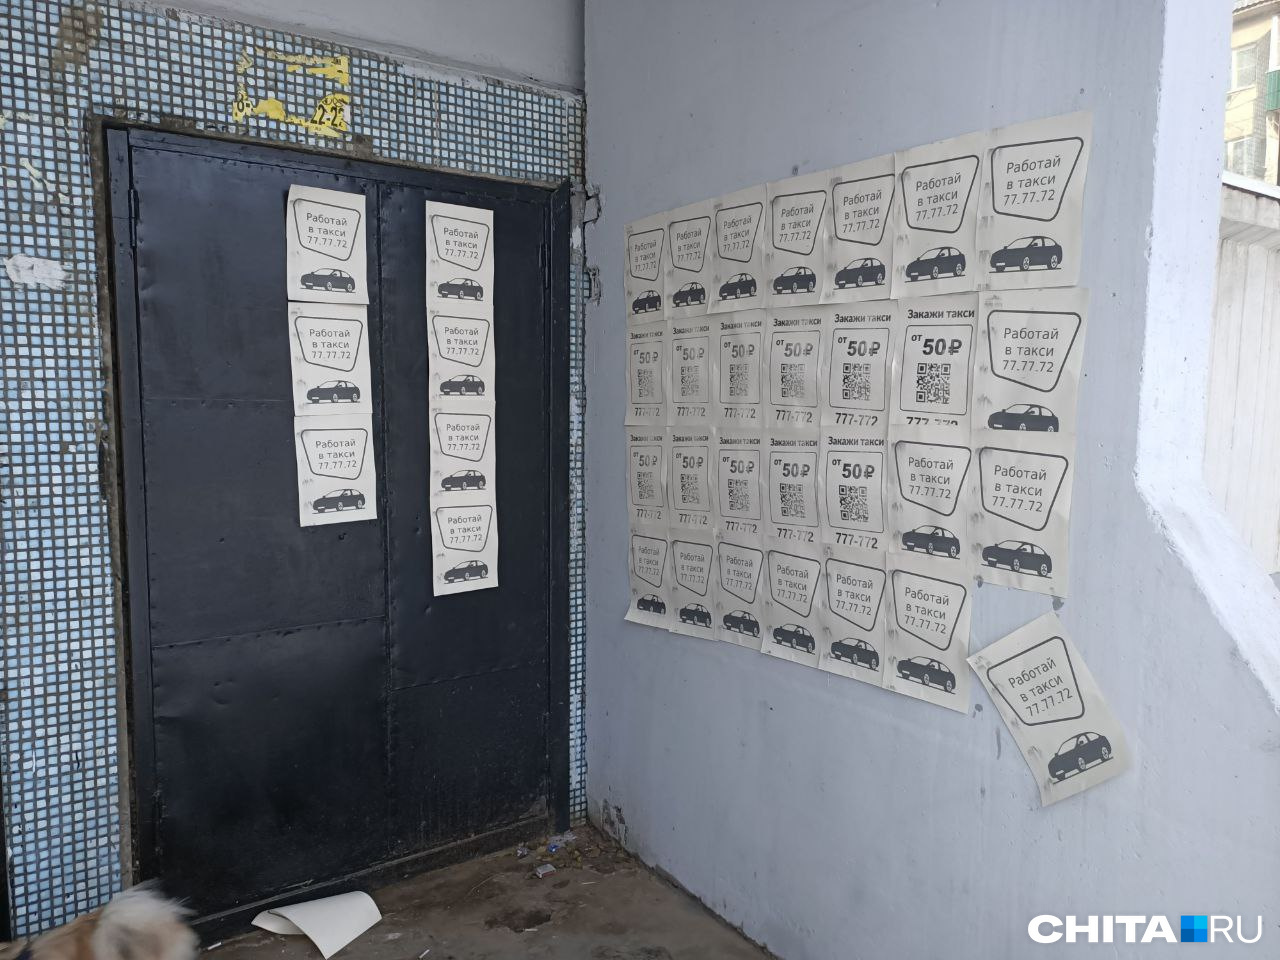 Рекламными листовками такси Mini облепили многоэтажку в Чите